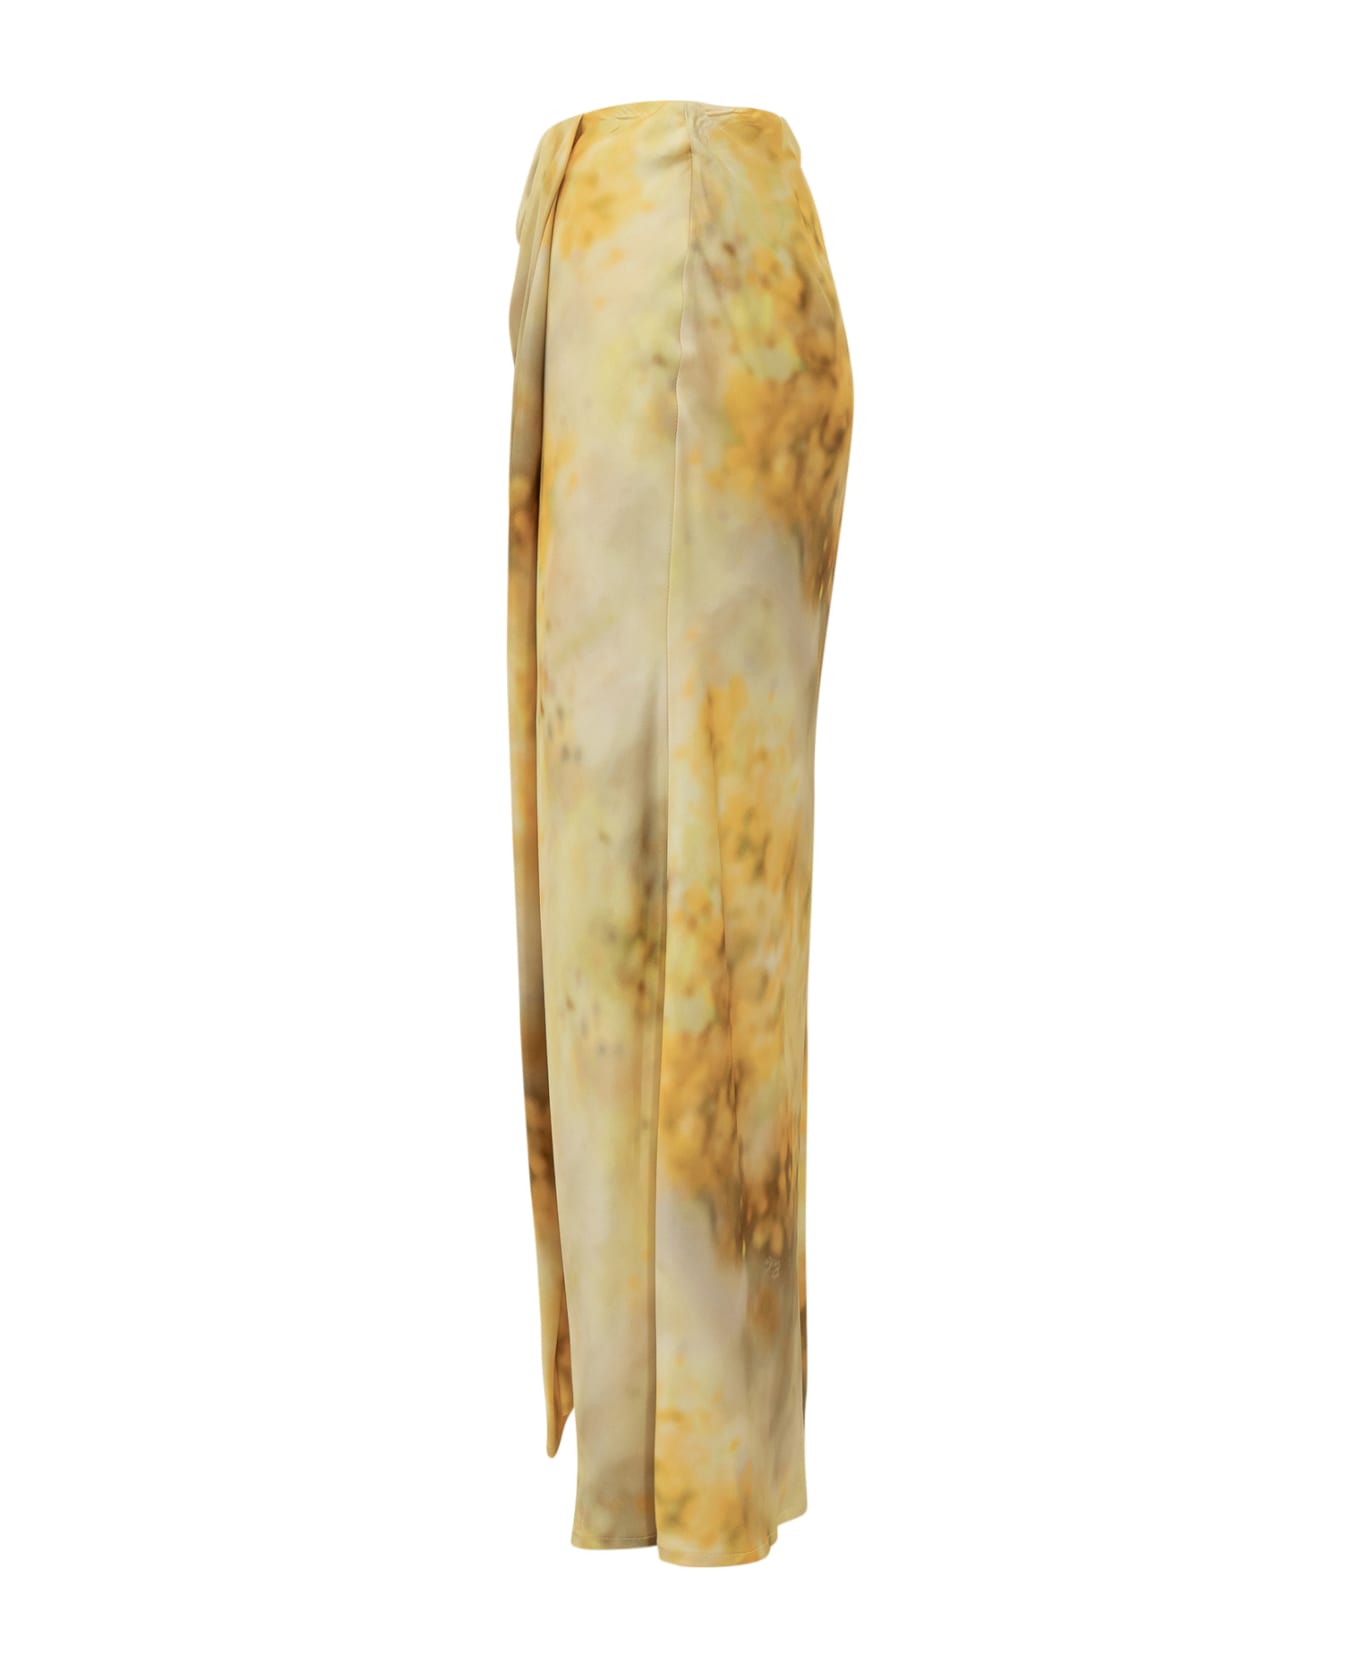 Pinko Carasina Skirt - MULT.GIALLO/VERDE スカート